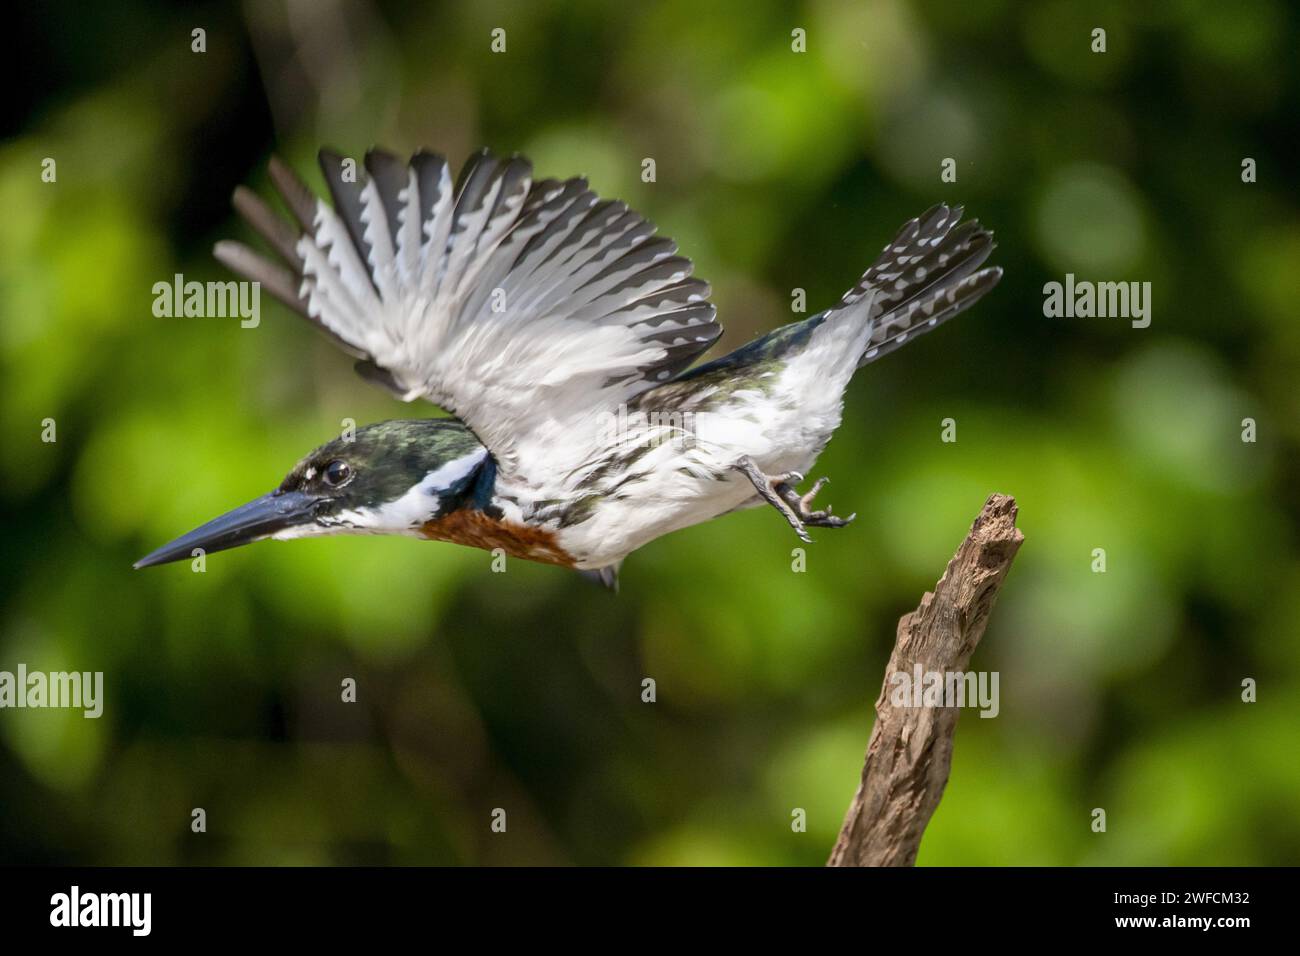 Kingfisher mâle prenant son envol - Banque D'Images